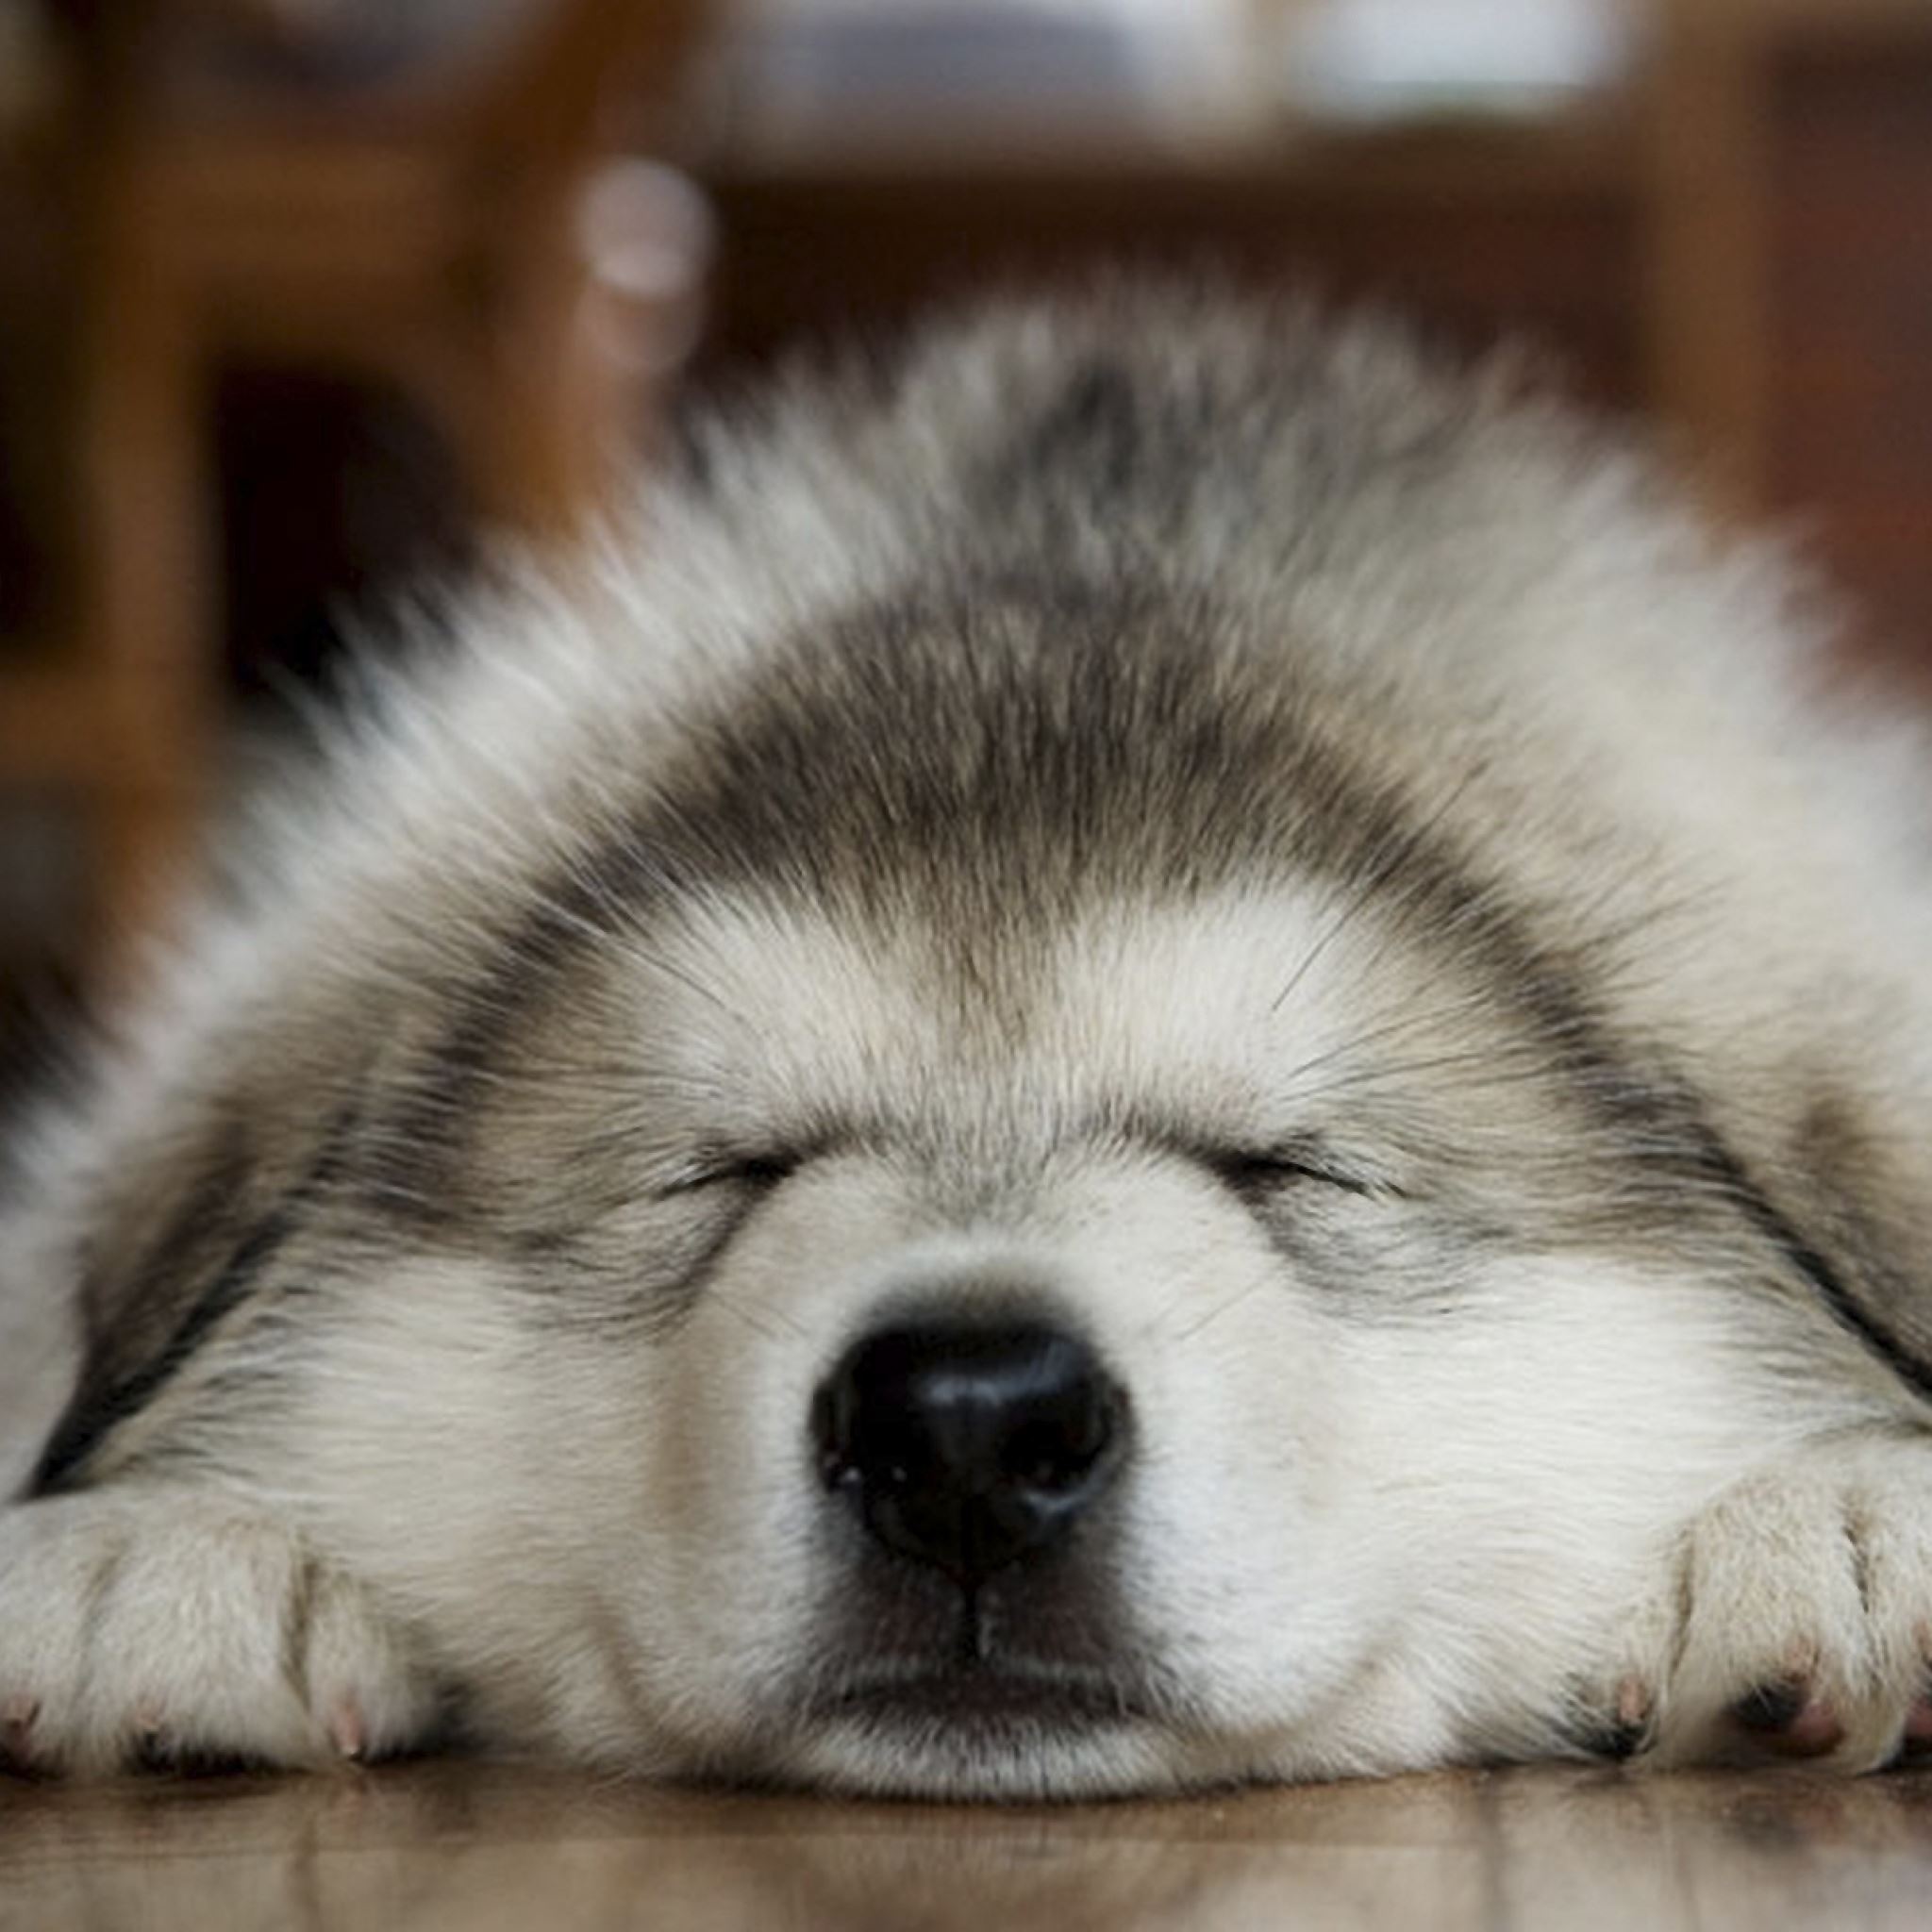 Dog muzzle sleep iPad Air wallpaper 